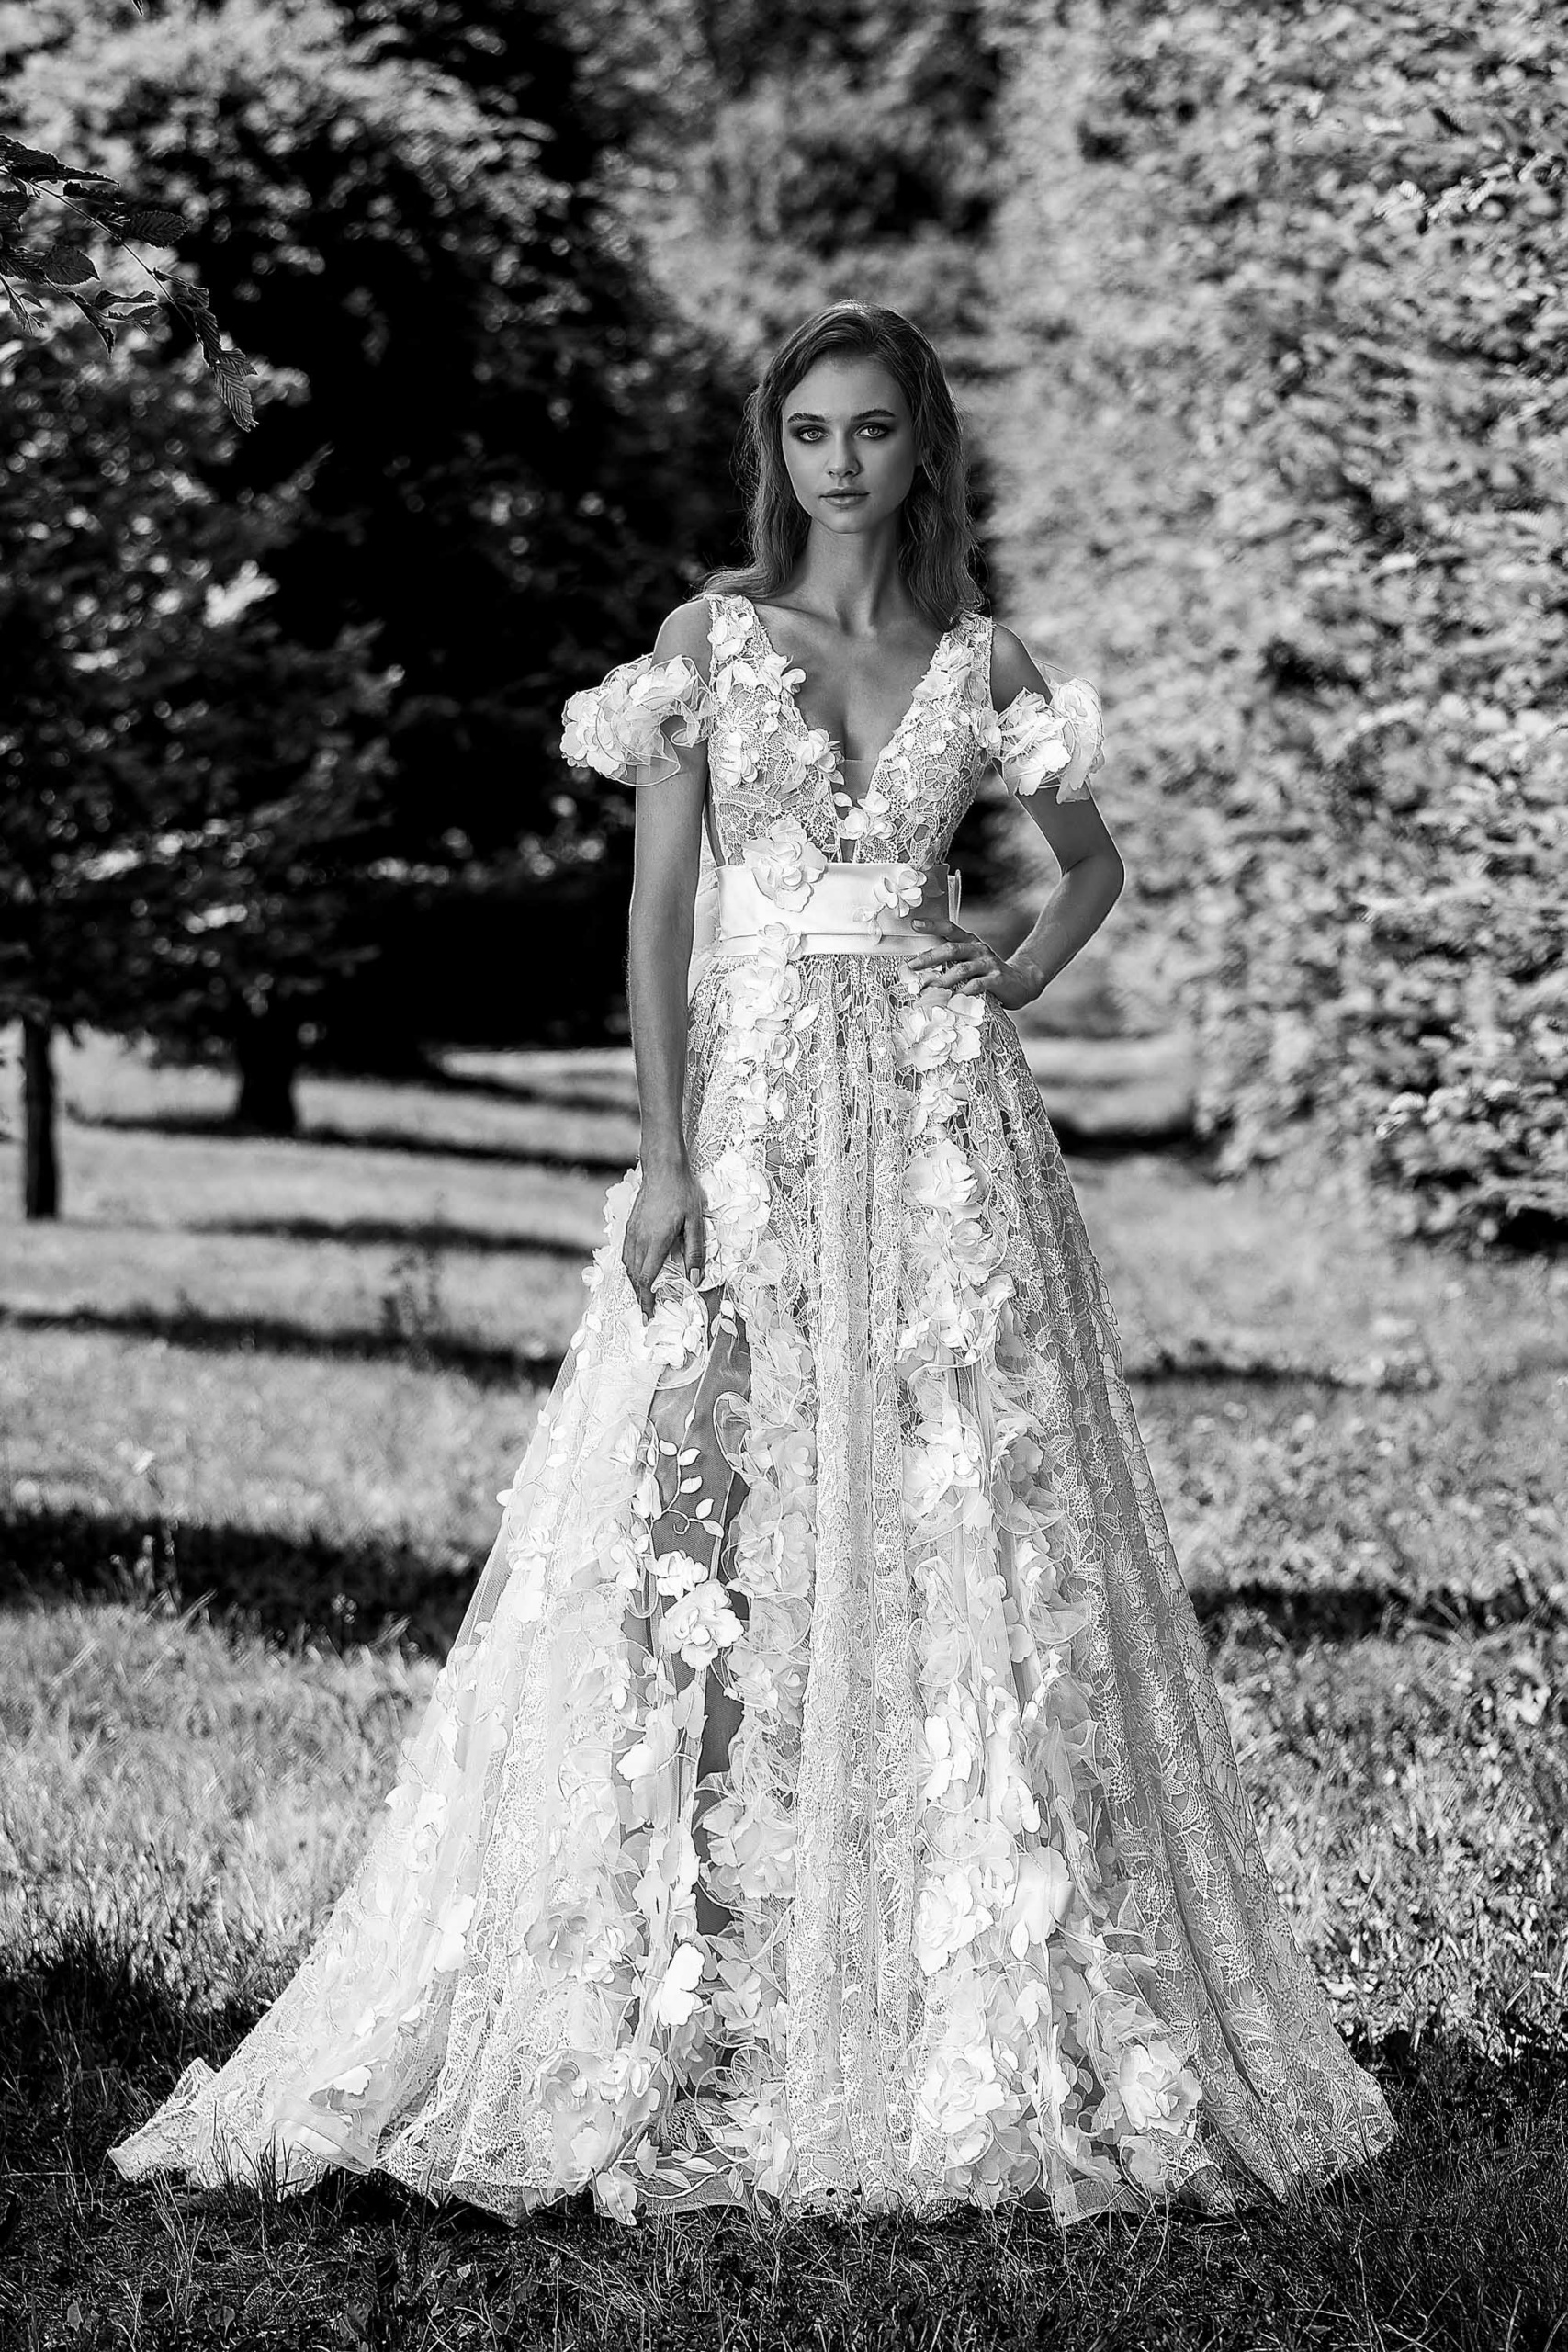 Milano Sposa: Vogue Style tra Arte e Moda - Realizza il Tuo Sogno con un Vestito da Sposa Unico - Consigli e Tendenze per il Tuo Matrimonio